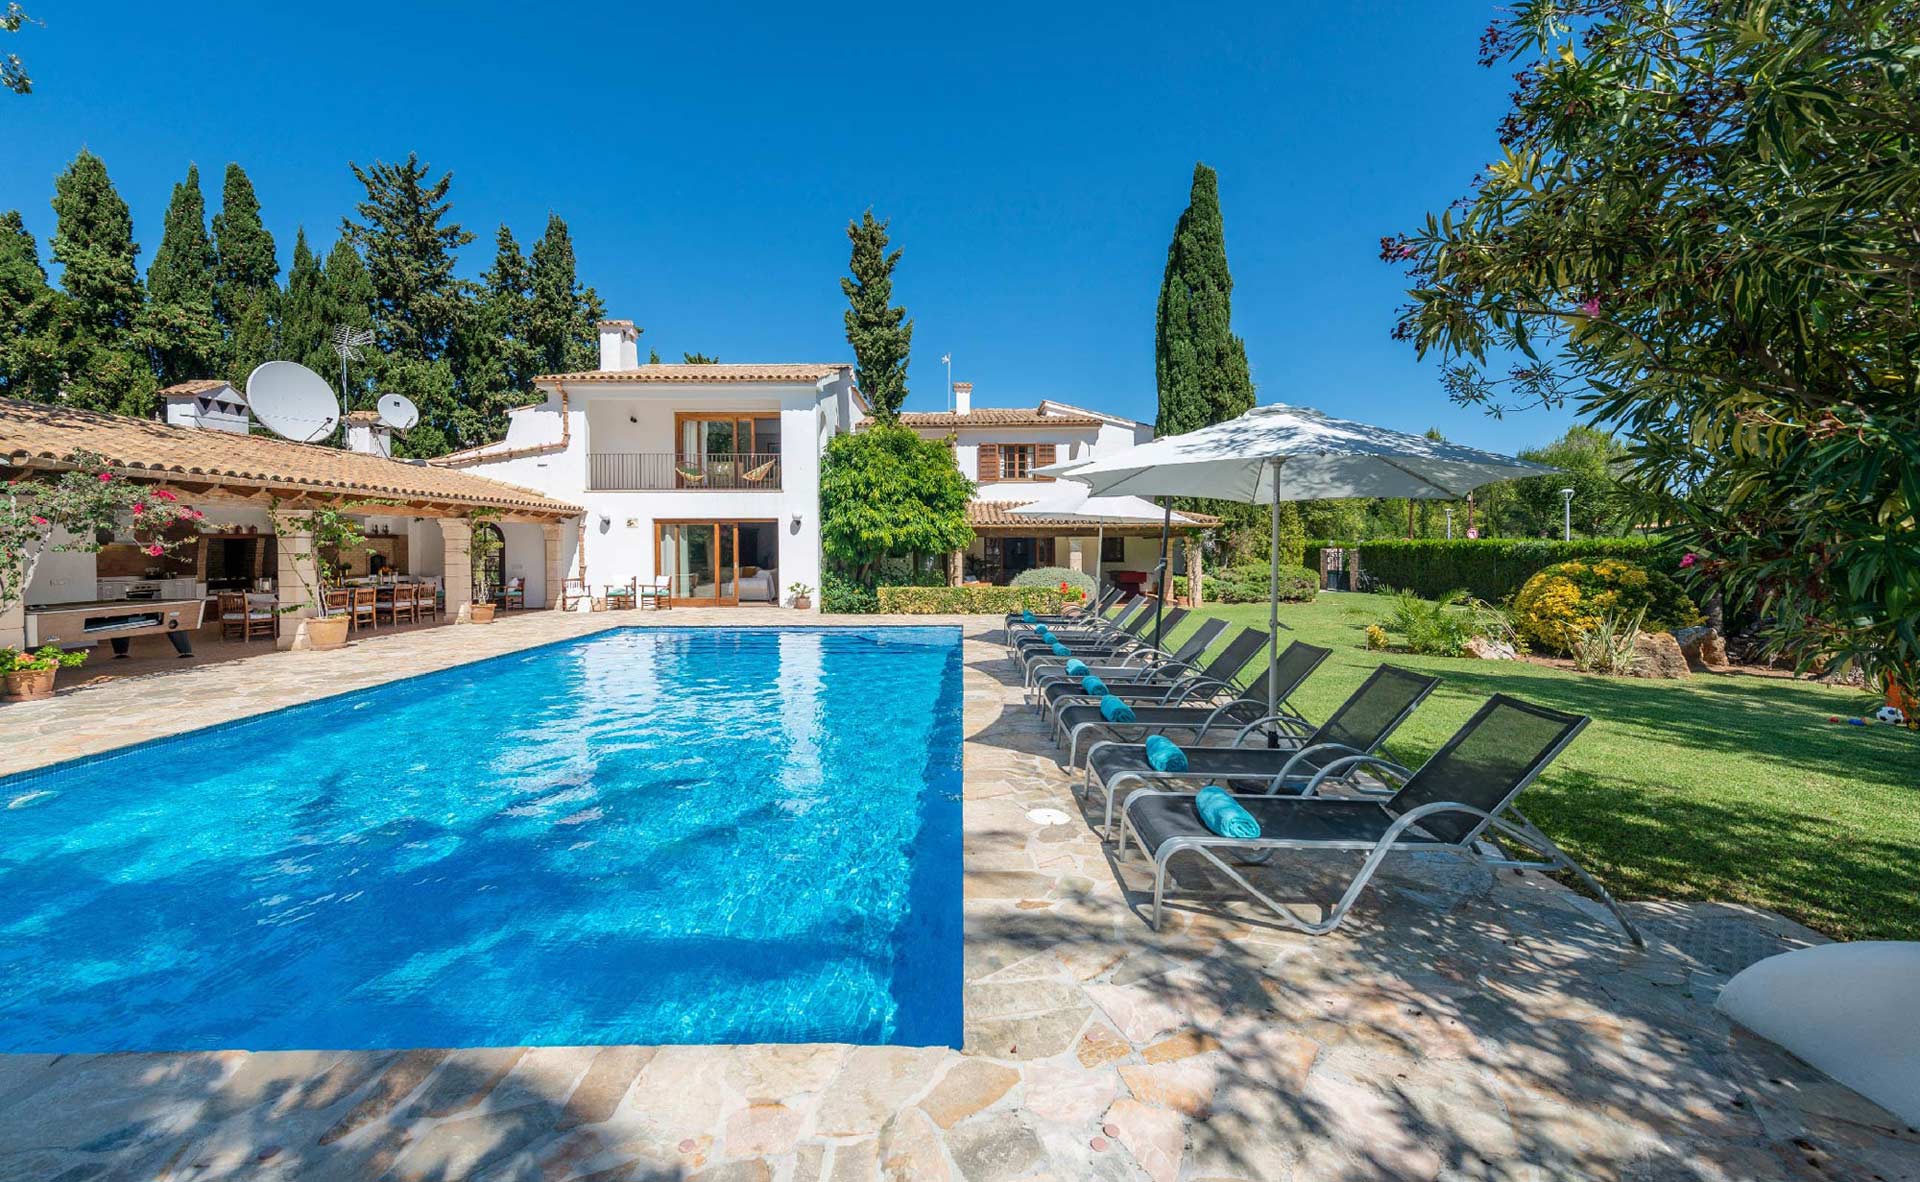 5 consideraciones antes de elegir una villa de vacaciones en Mallorca